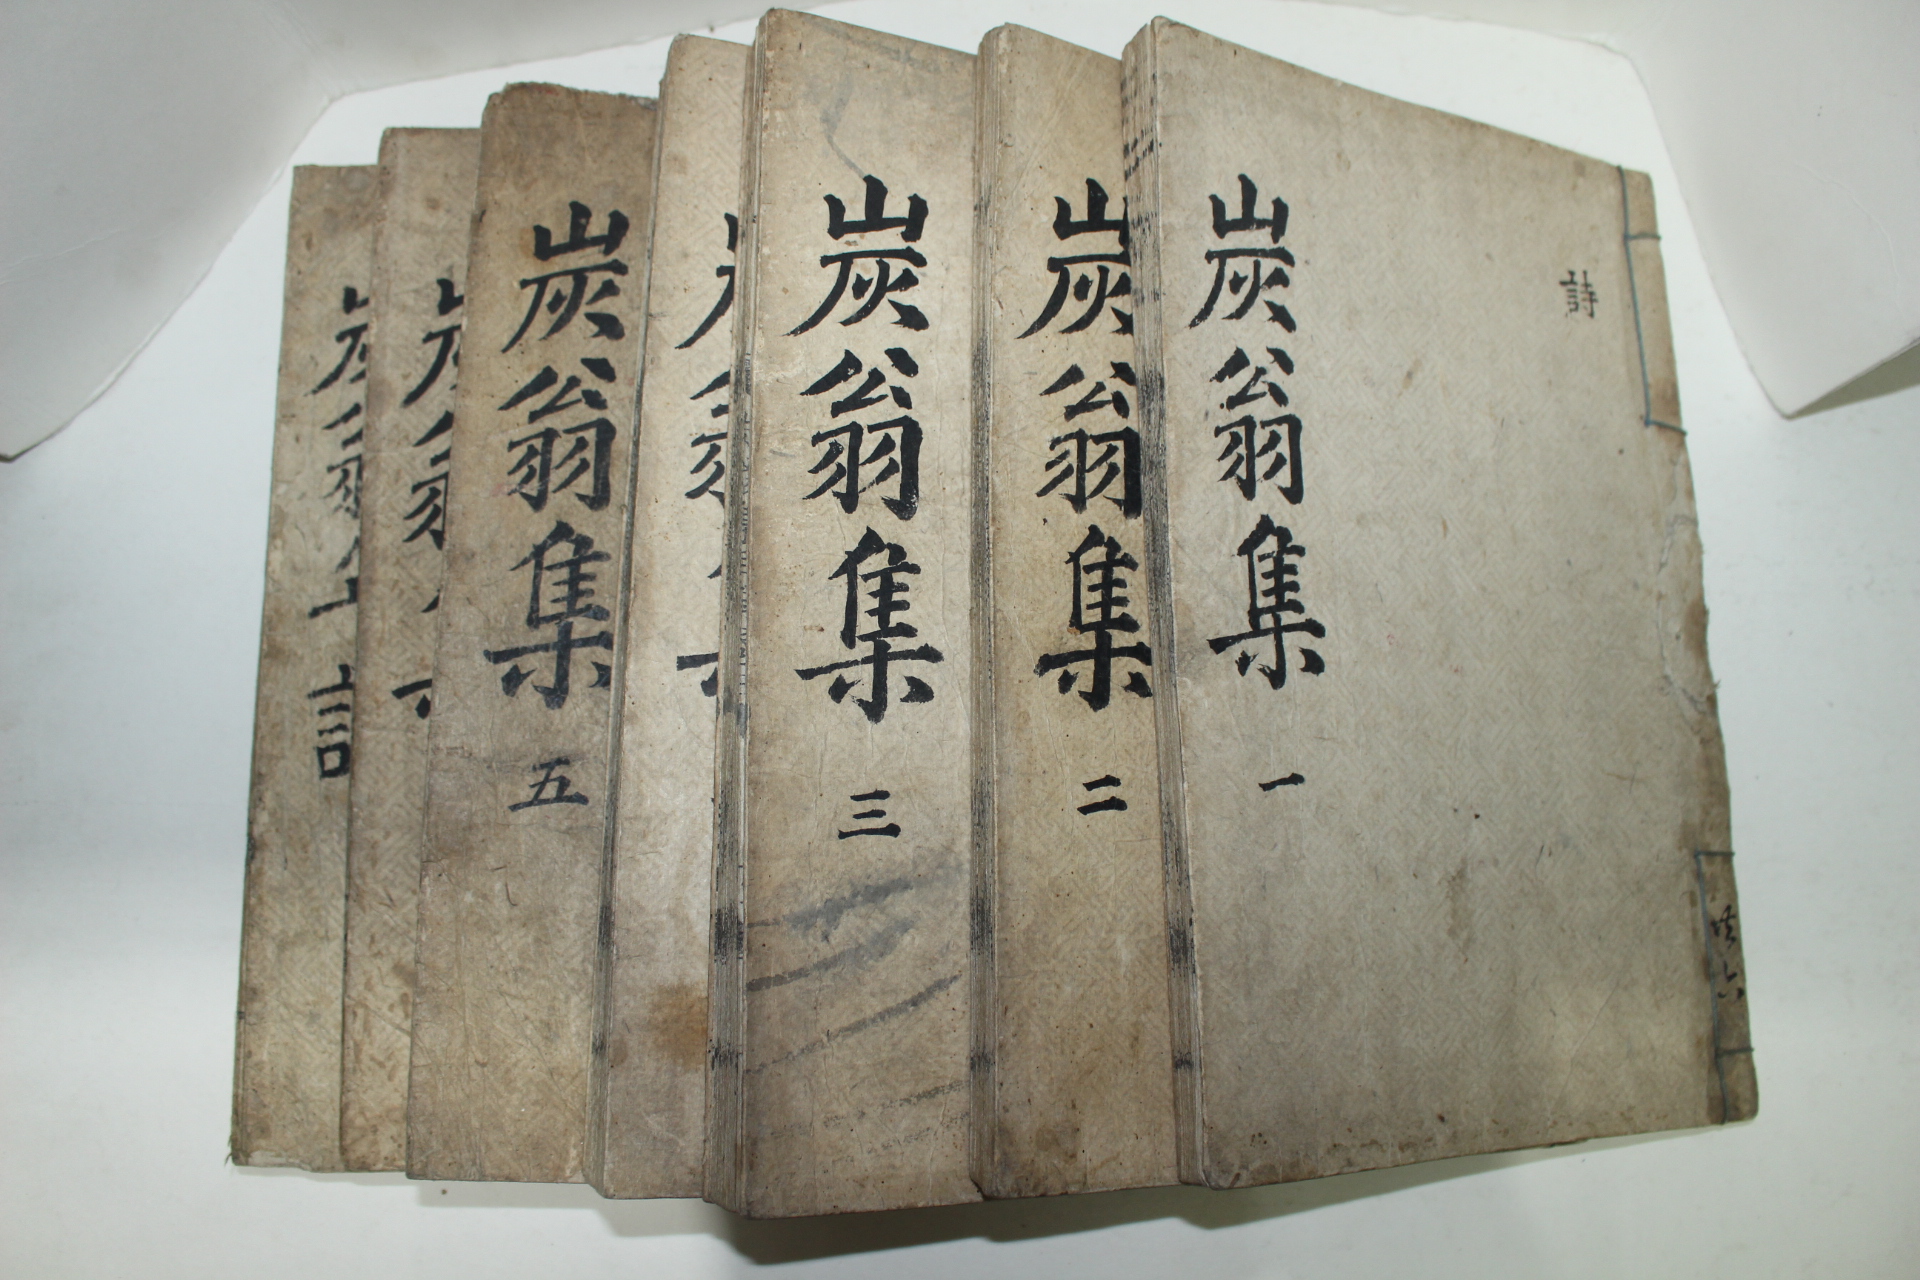 1738년 목판본 권시(權諰) 탄옹선생집(炭翁先生集) 7책완질